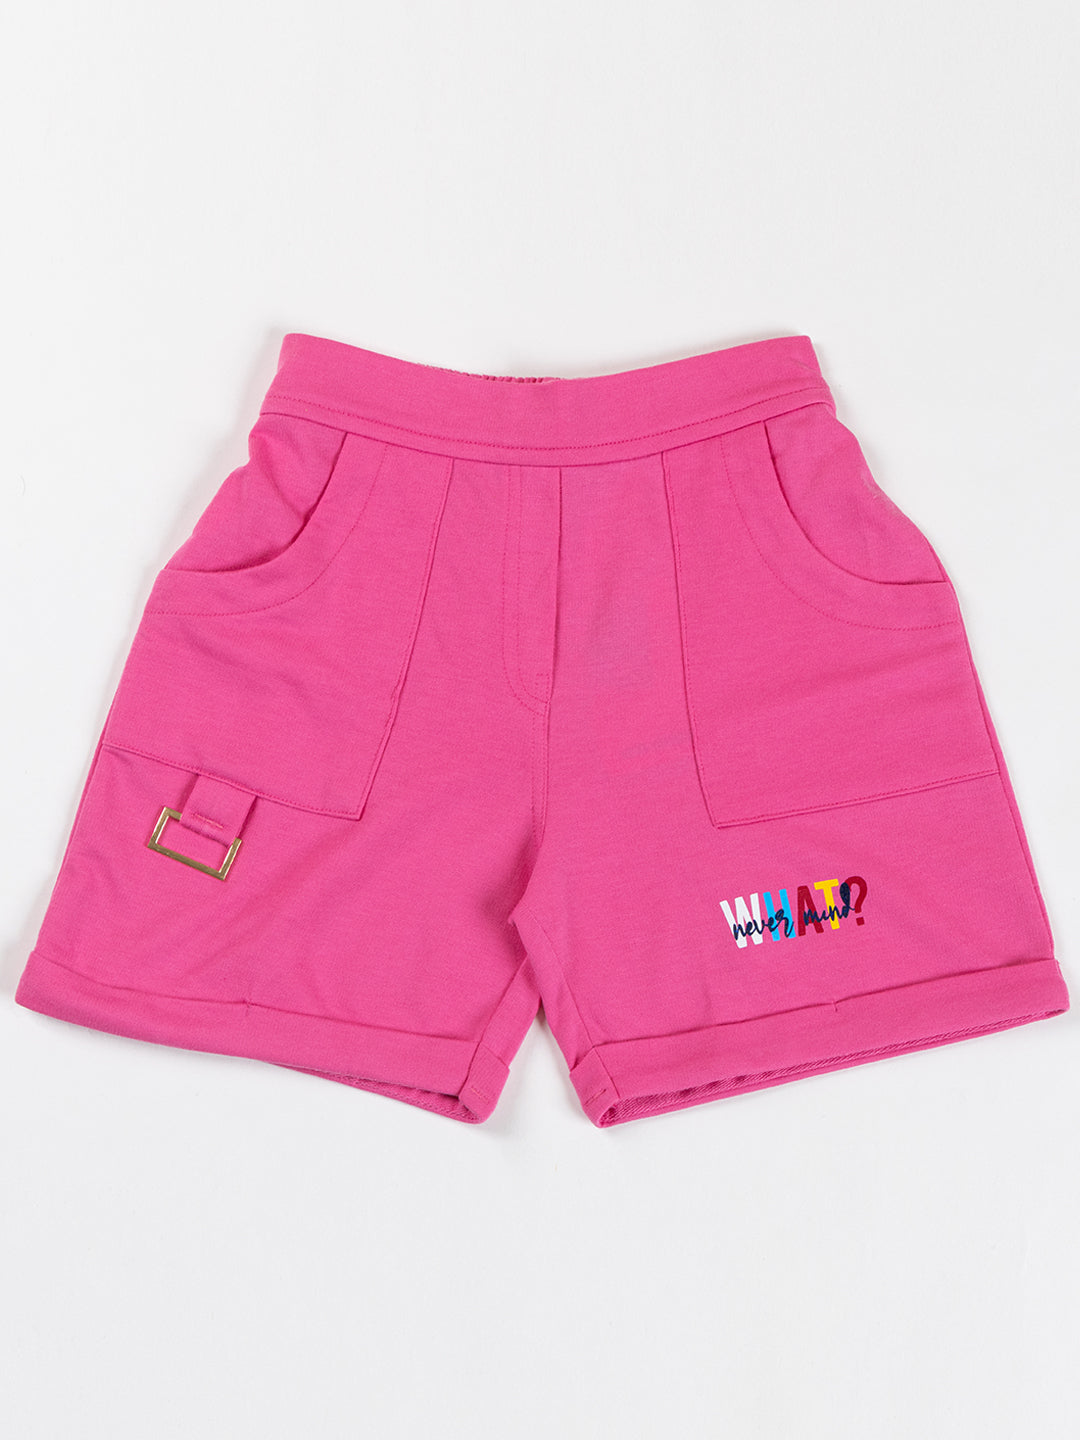 Pampolina Girls Solid Shorts-Pink